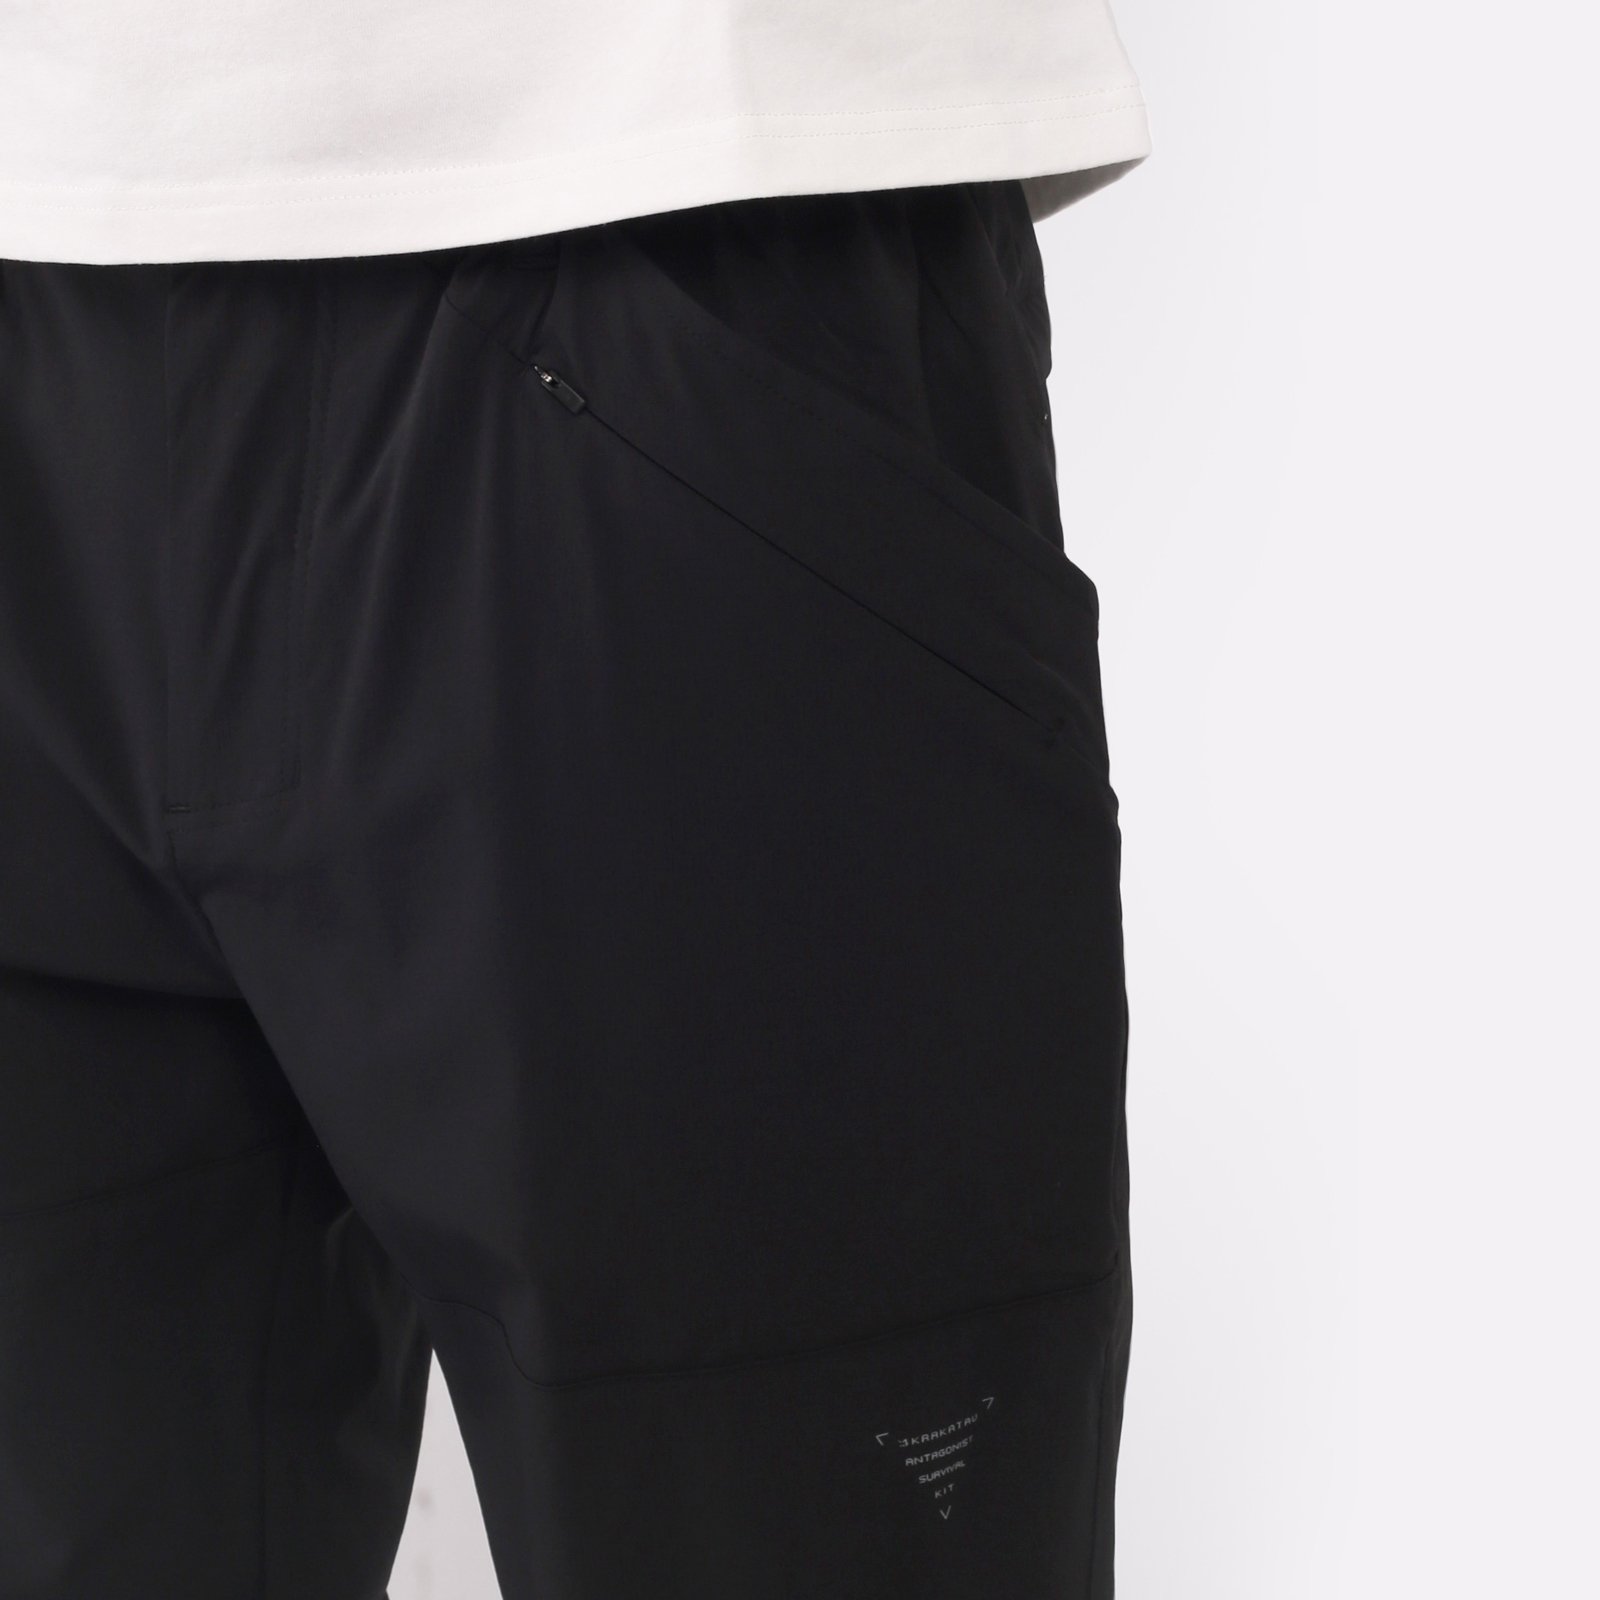 мужские черные брюки KRAKATAU Rm180-1 Rm180-1-чёрный - цена, описание, фото 4